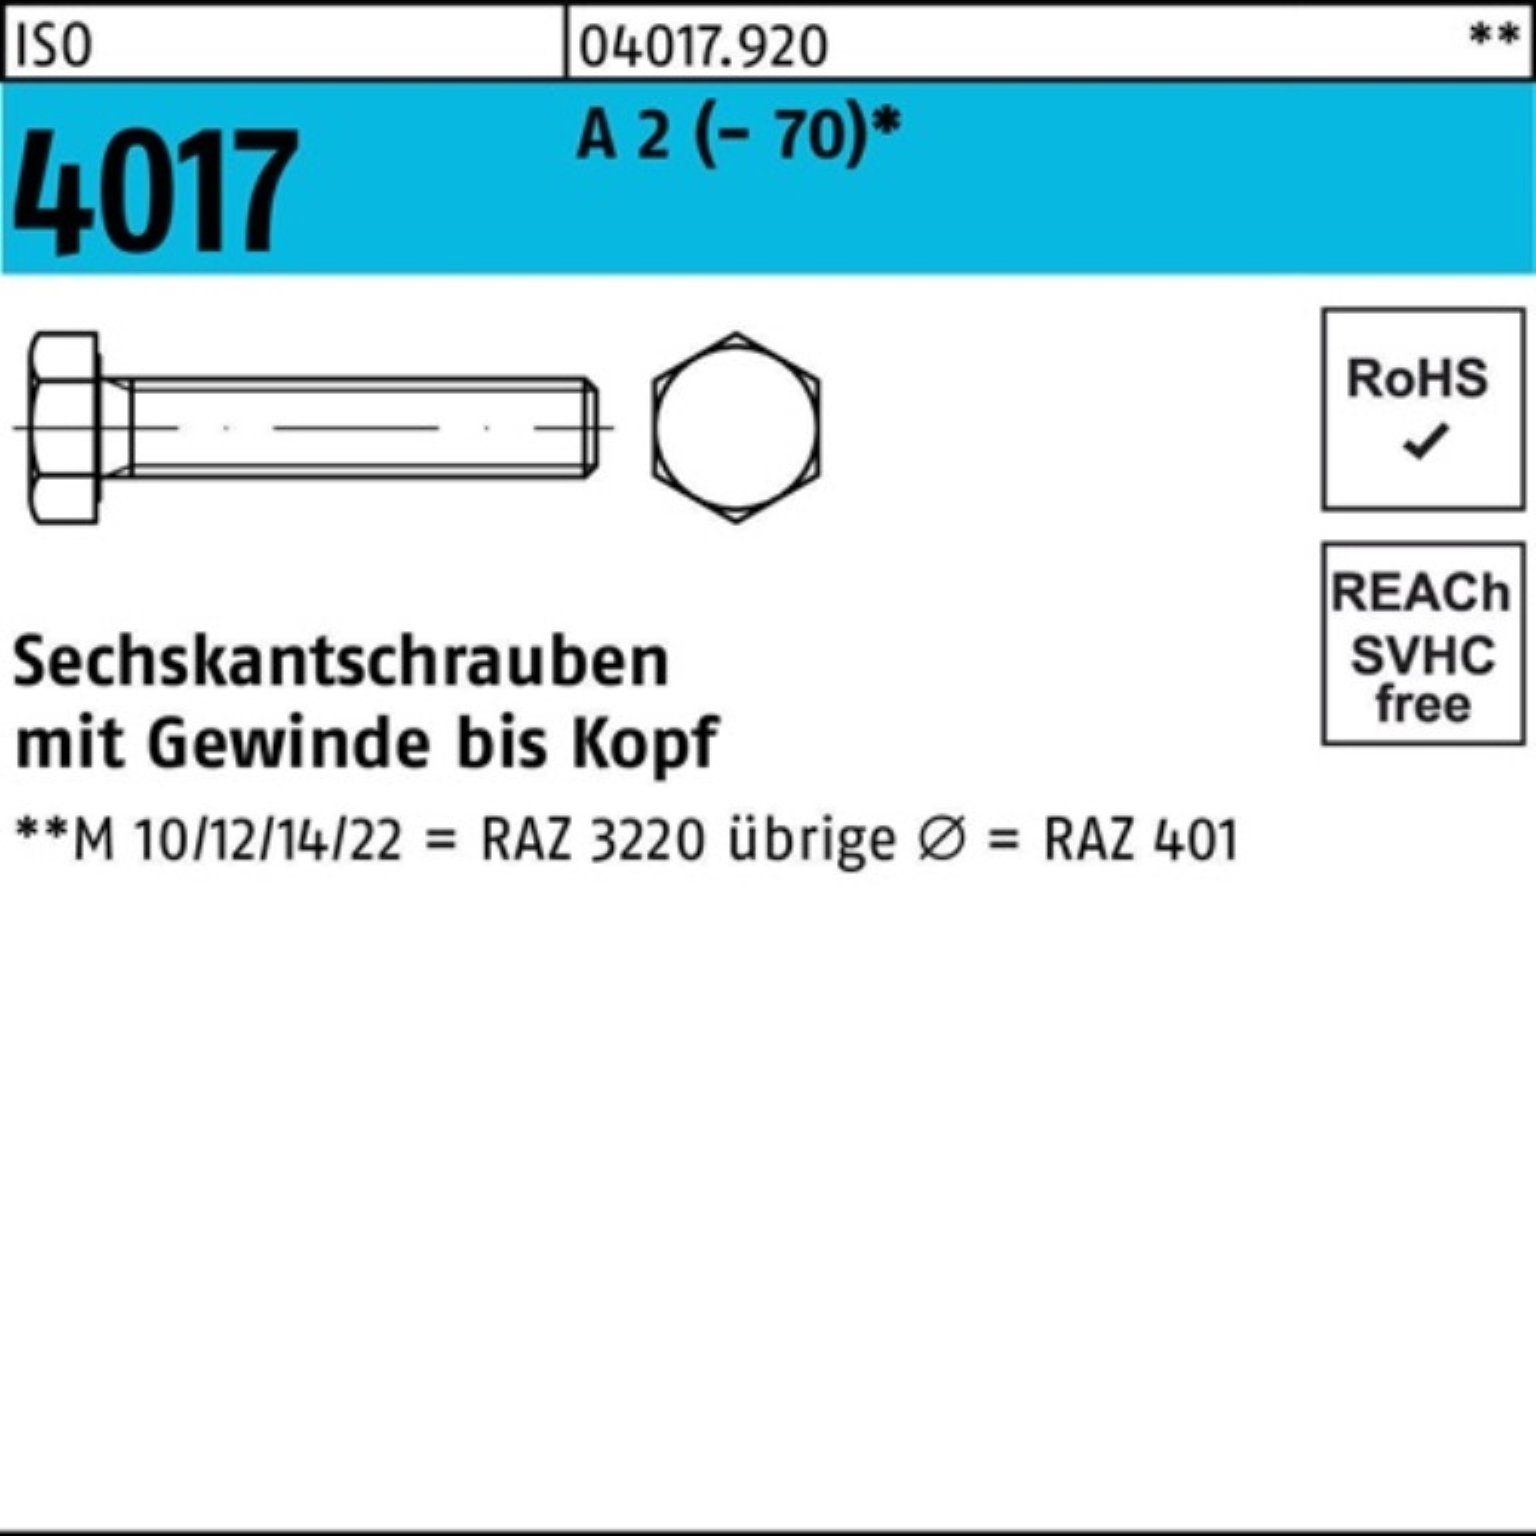 Bufab Sechskantschraube 100er Pack Sechskantschraube ISO 4017 VG M8x 190 A 2 (70) 50 Stück